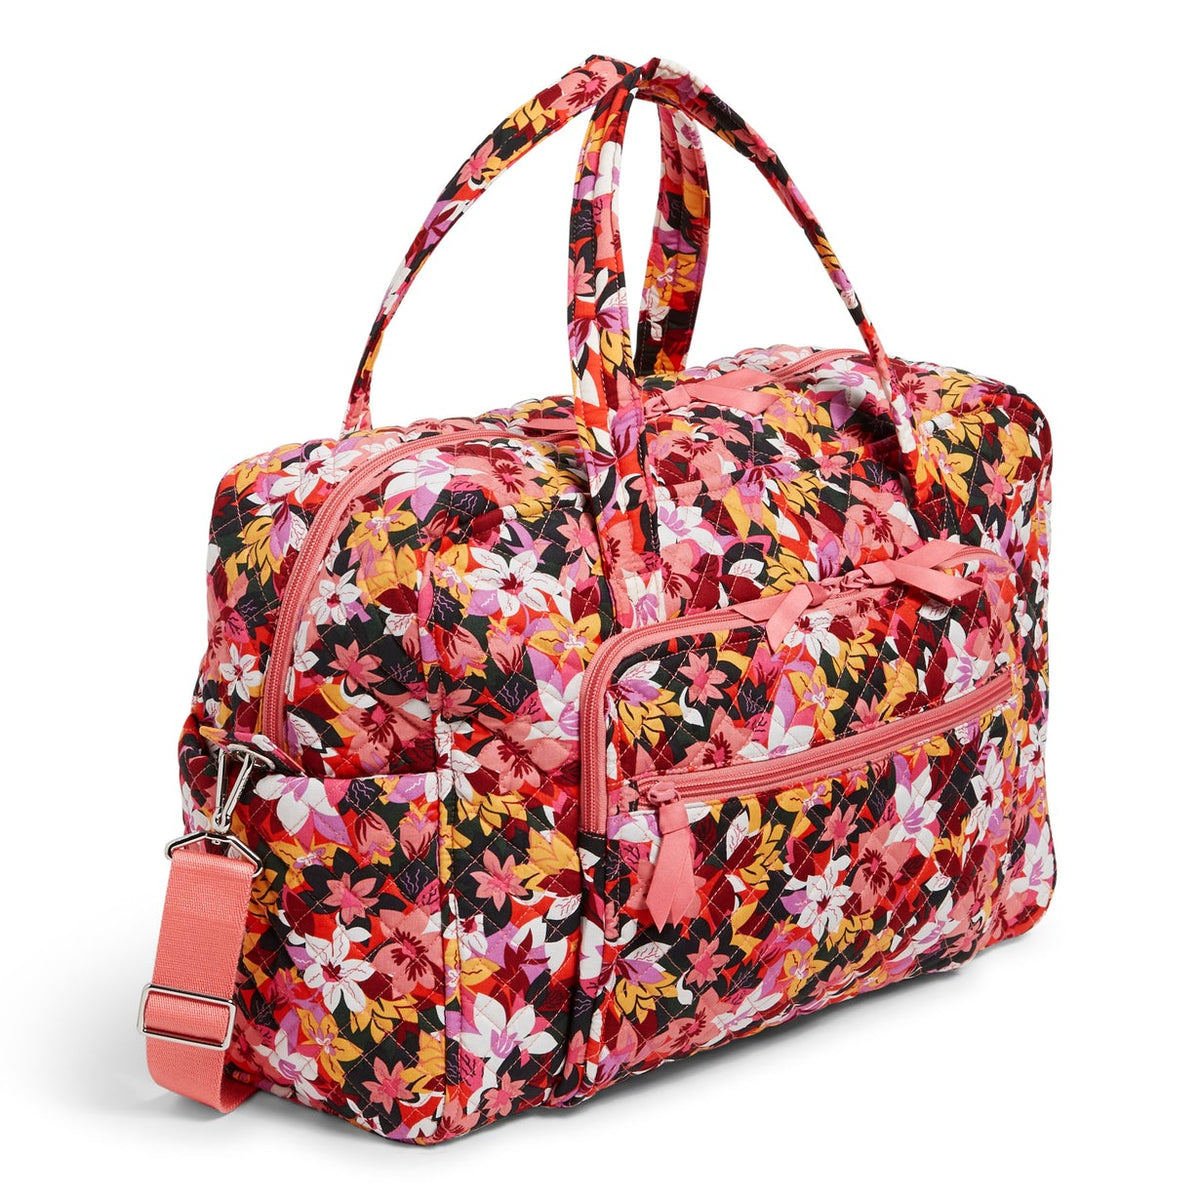 Vera Bradley Weekender Travel Bag “Rosa Floral”